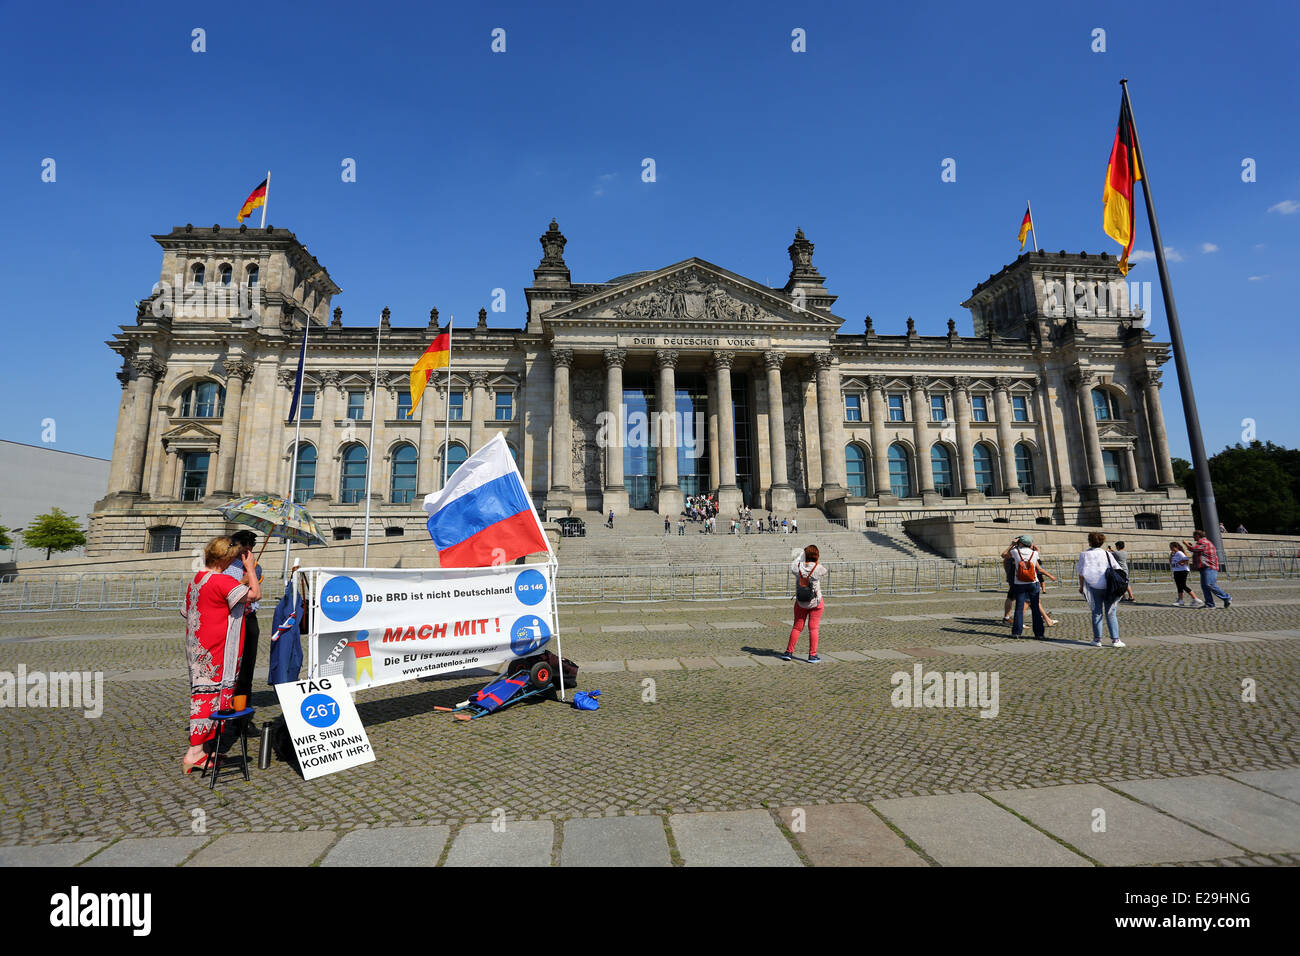 BRD manifestación en el edificio del Reichstag en Berlín, Alemania Foto de stock